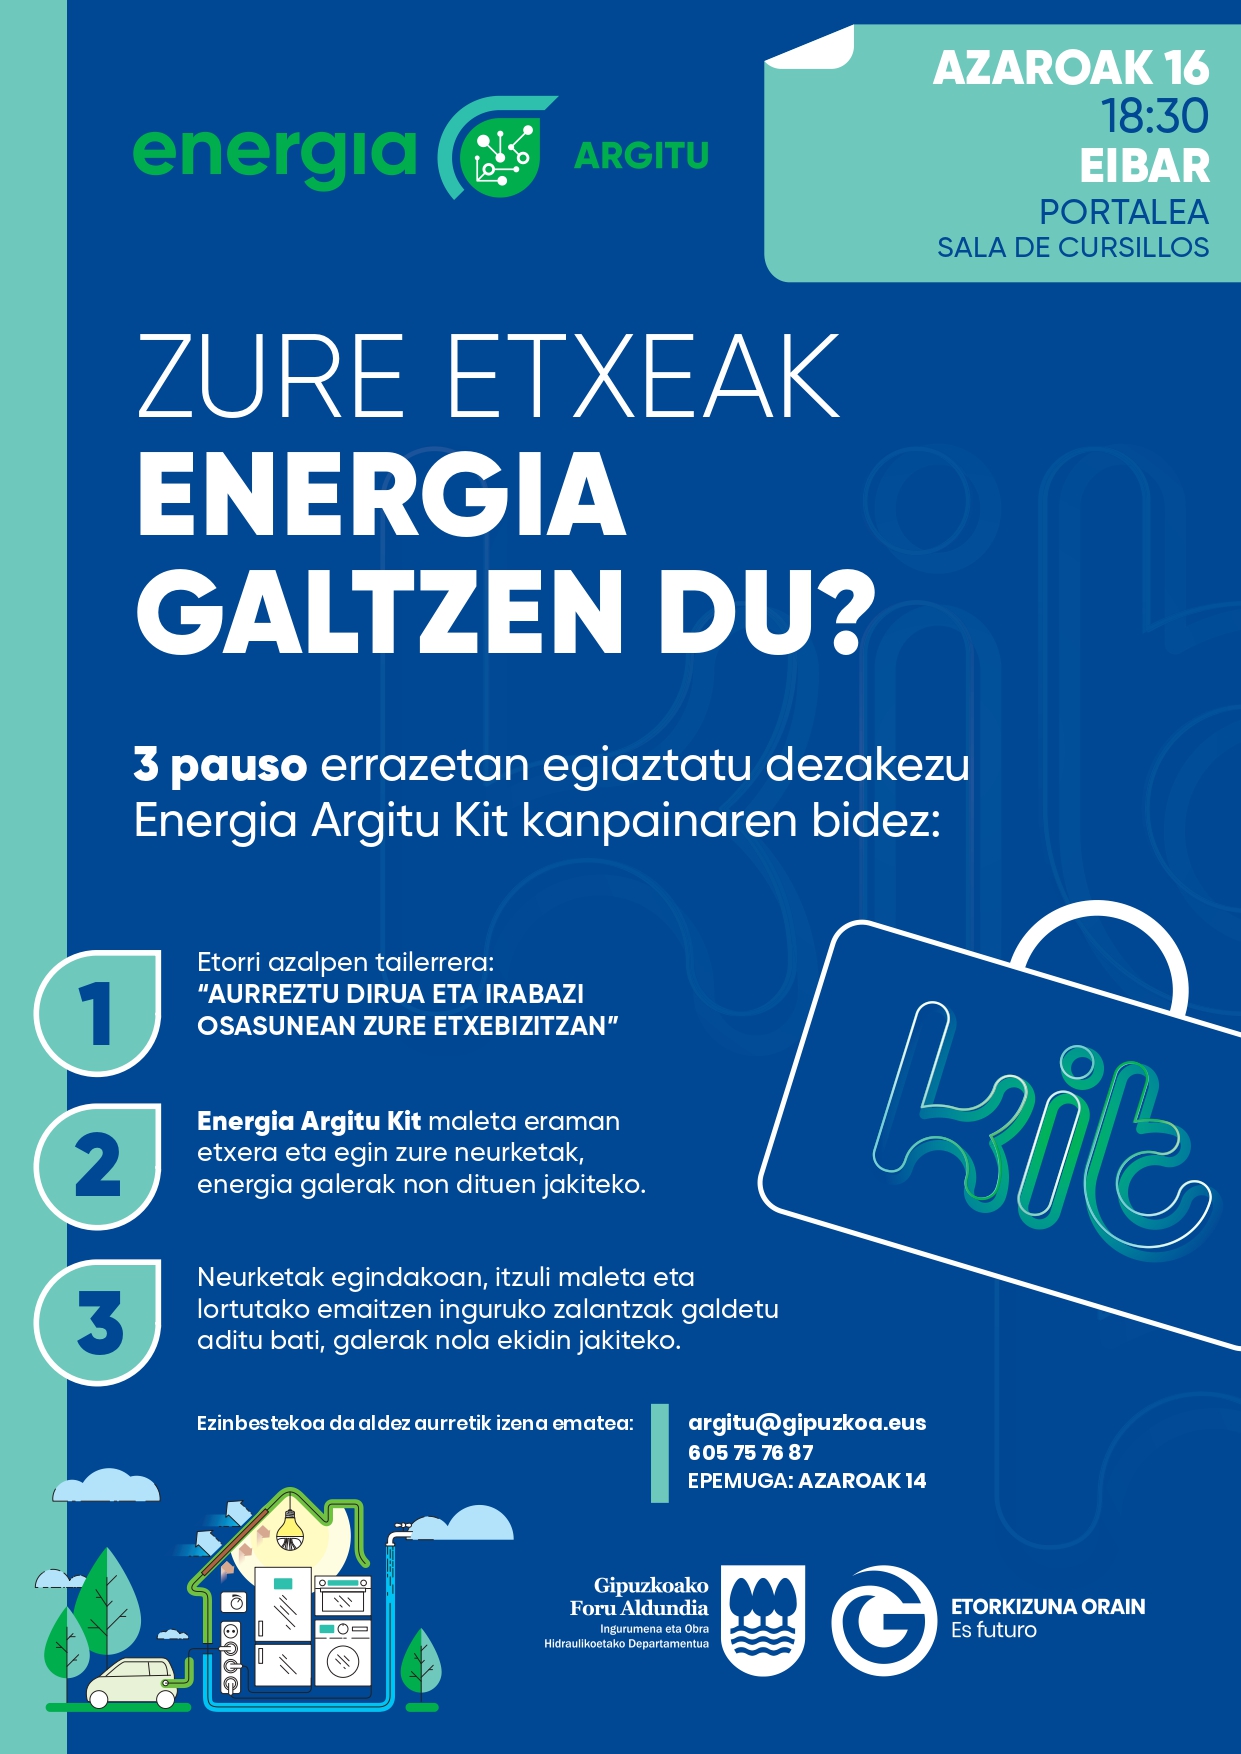 "Energia Argitu Kit" iritsi da Eibarrera, nork bere etxeko autodiagnostiko energetikoa egiteko aukera ematen duen kanpaina.